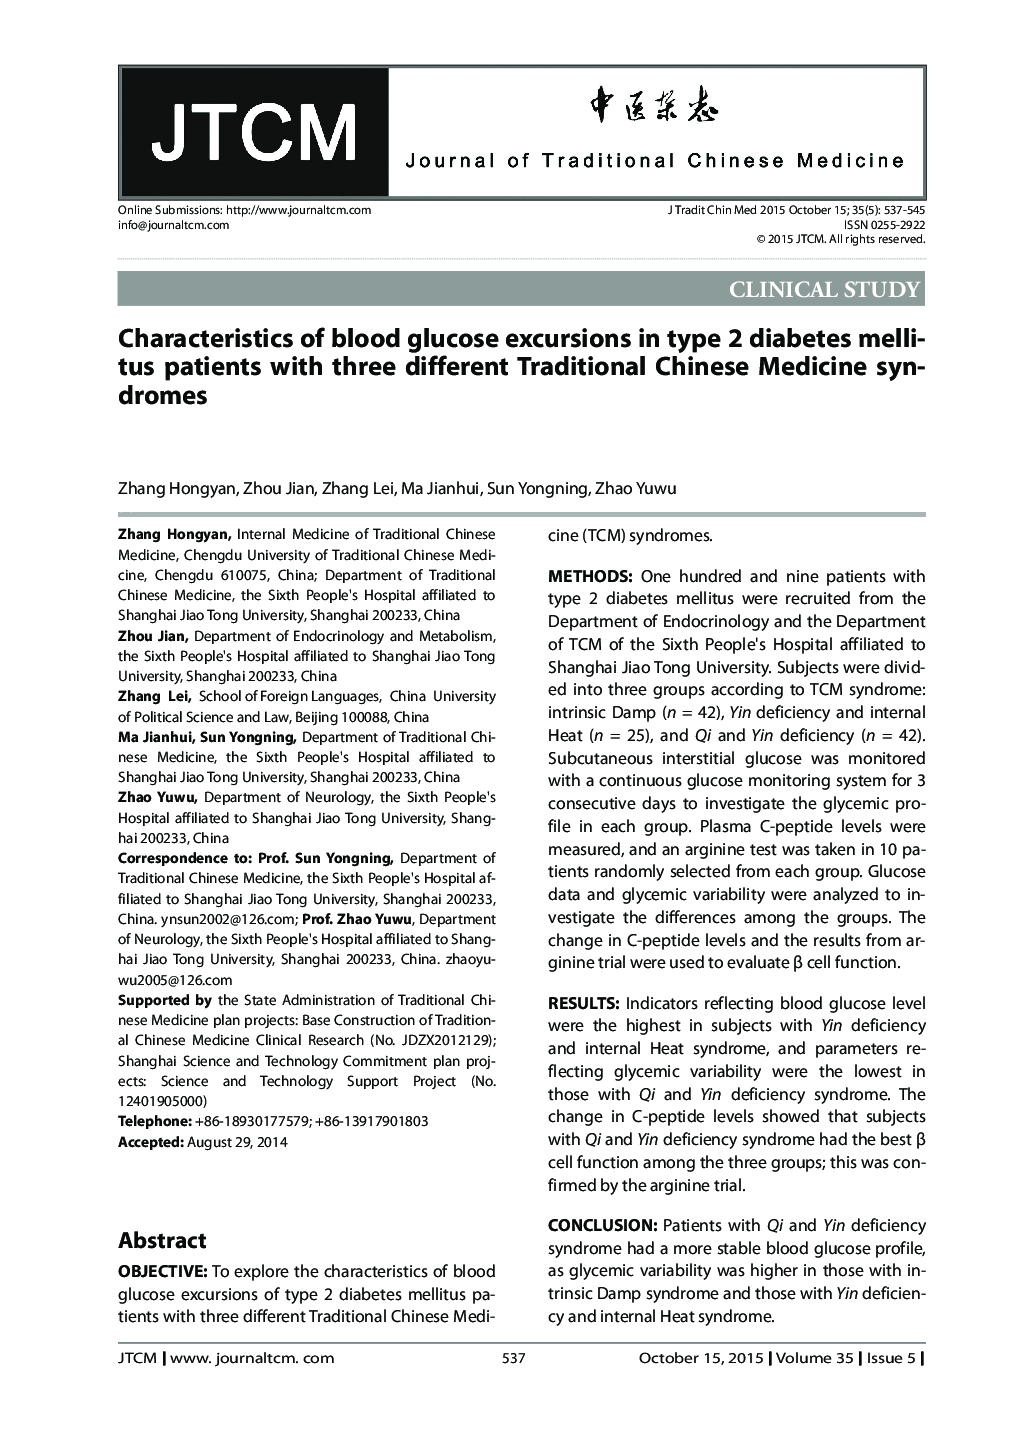 ویژگی های گلوکز خون در بیماران مبتلا به دیابت نوع 2 با سه سندرم طب سنتی چین 